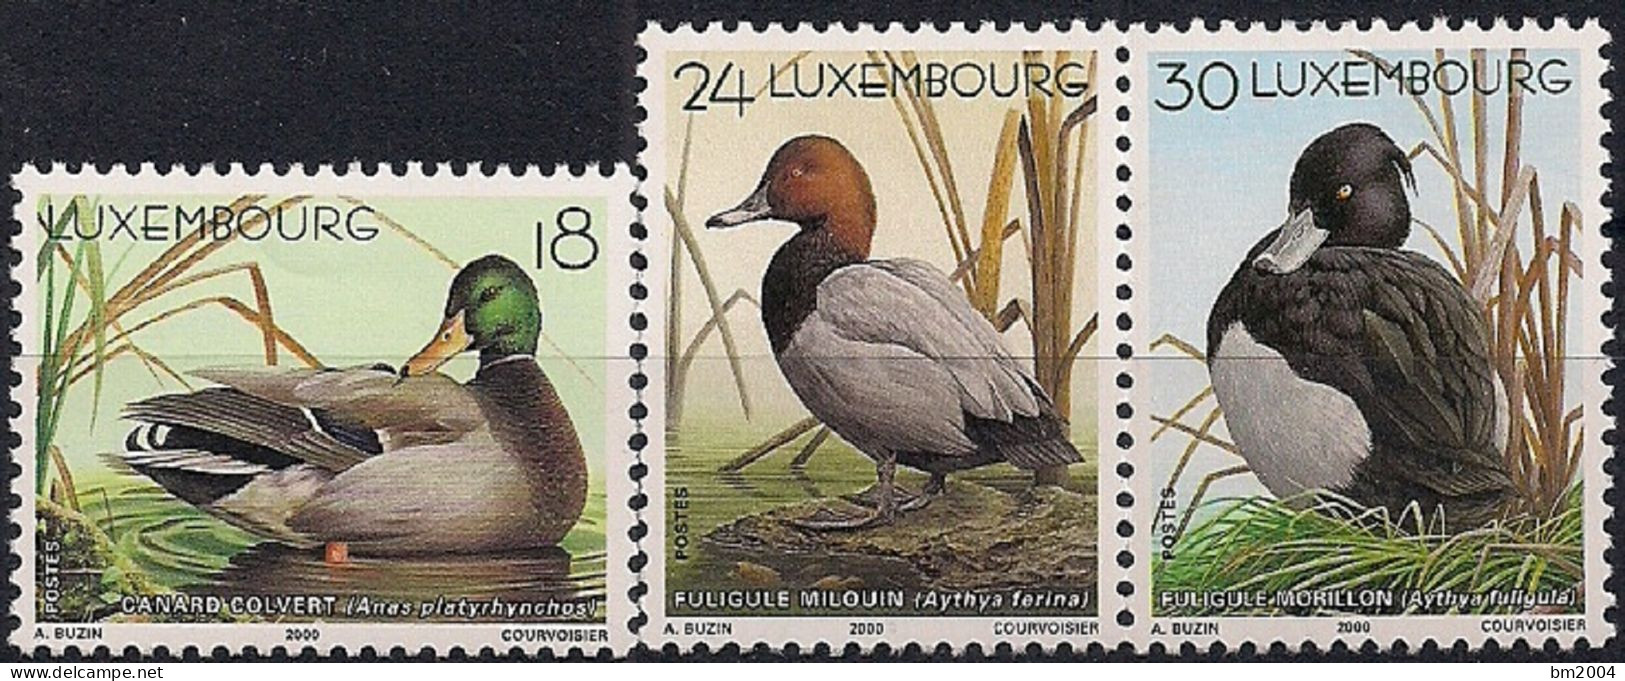 2000 Luxemburg   Mi. 1505**MNH  Einheimische Tiere: Enten - Ongebruikt